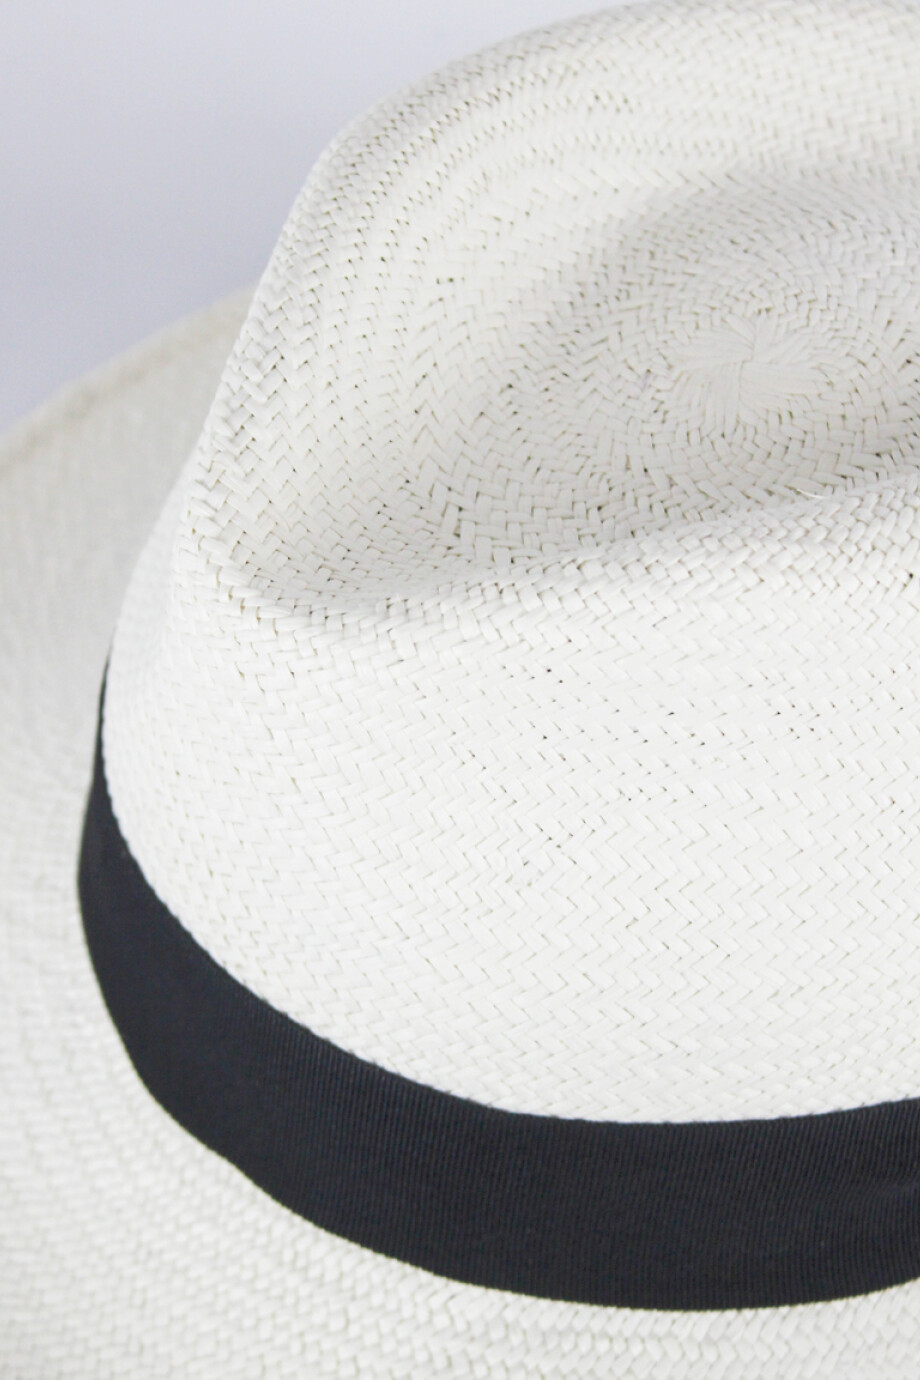 Sombrero Panamá Blanco